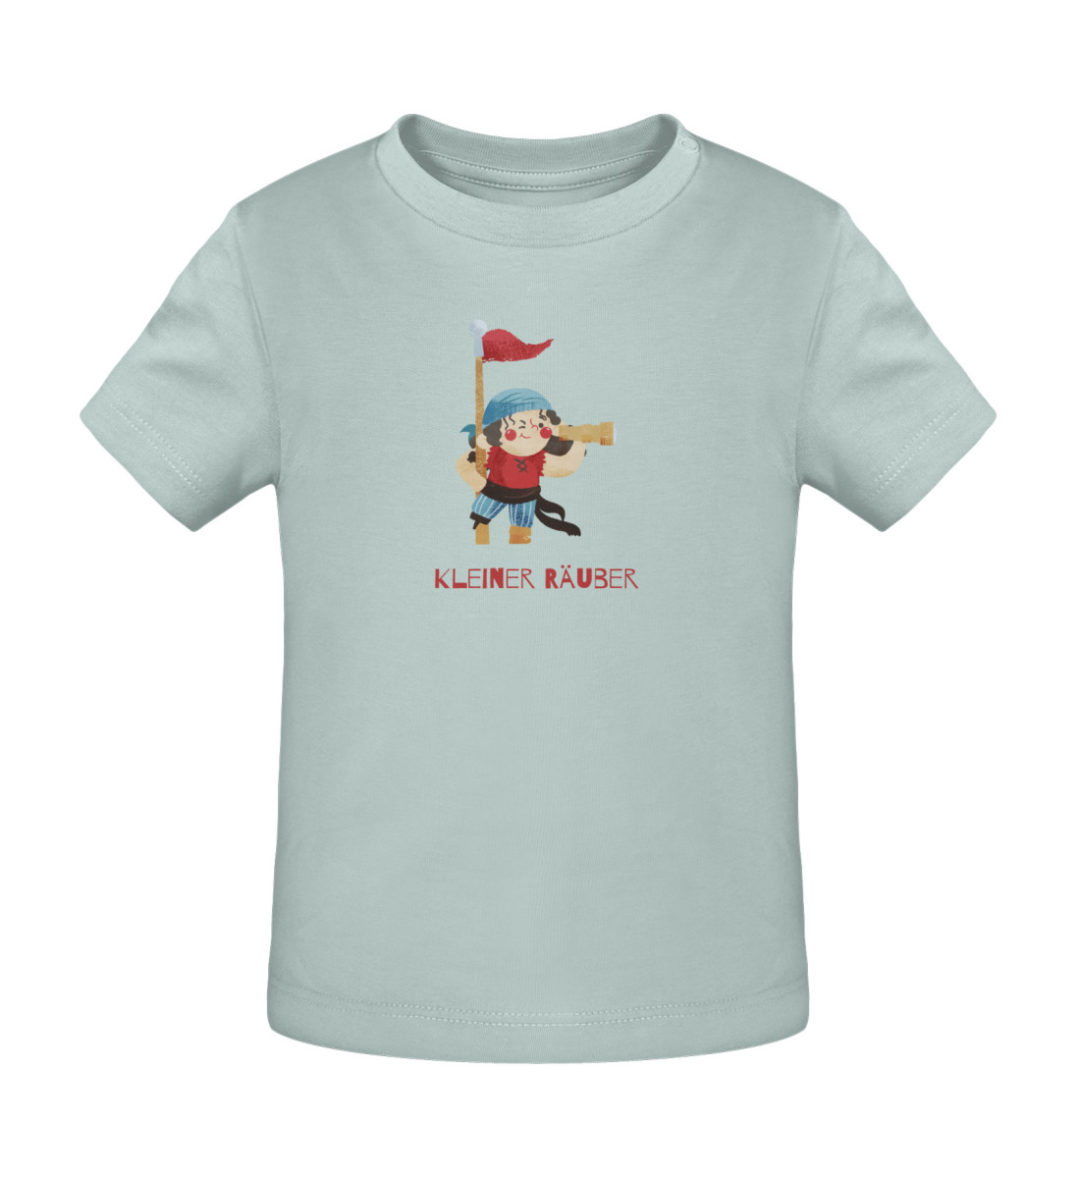 Kleiner Räuber - Baby Creator T-Shirt ST/ST-7033